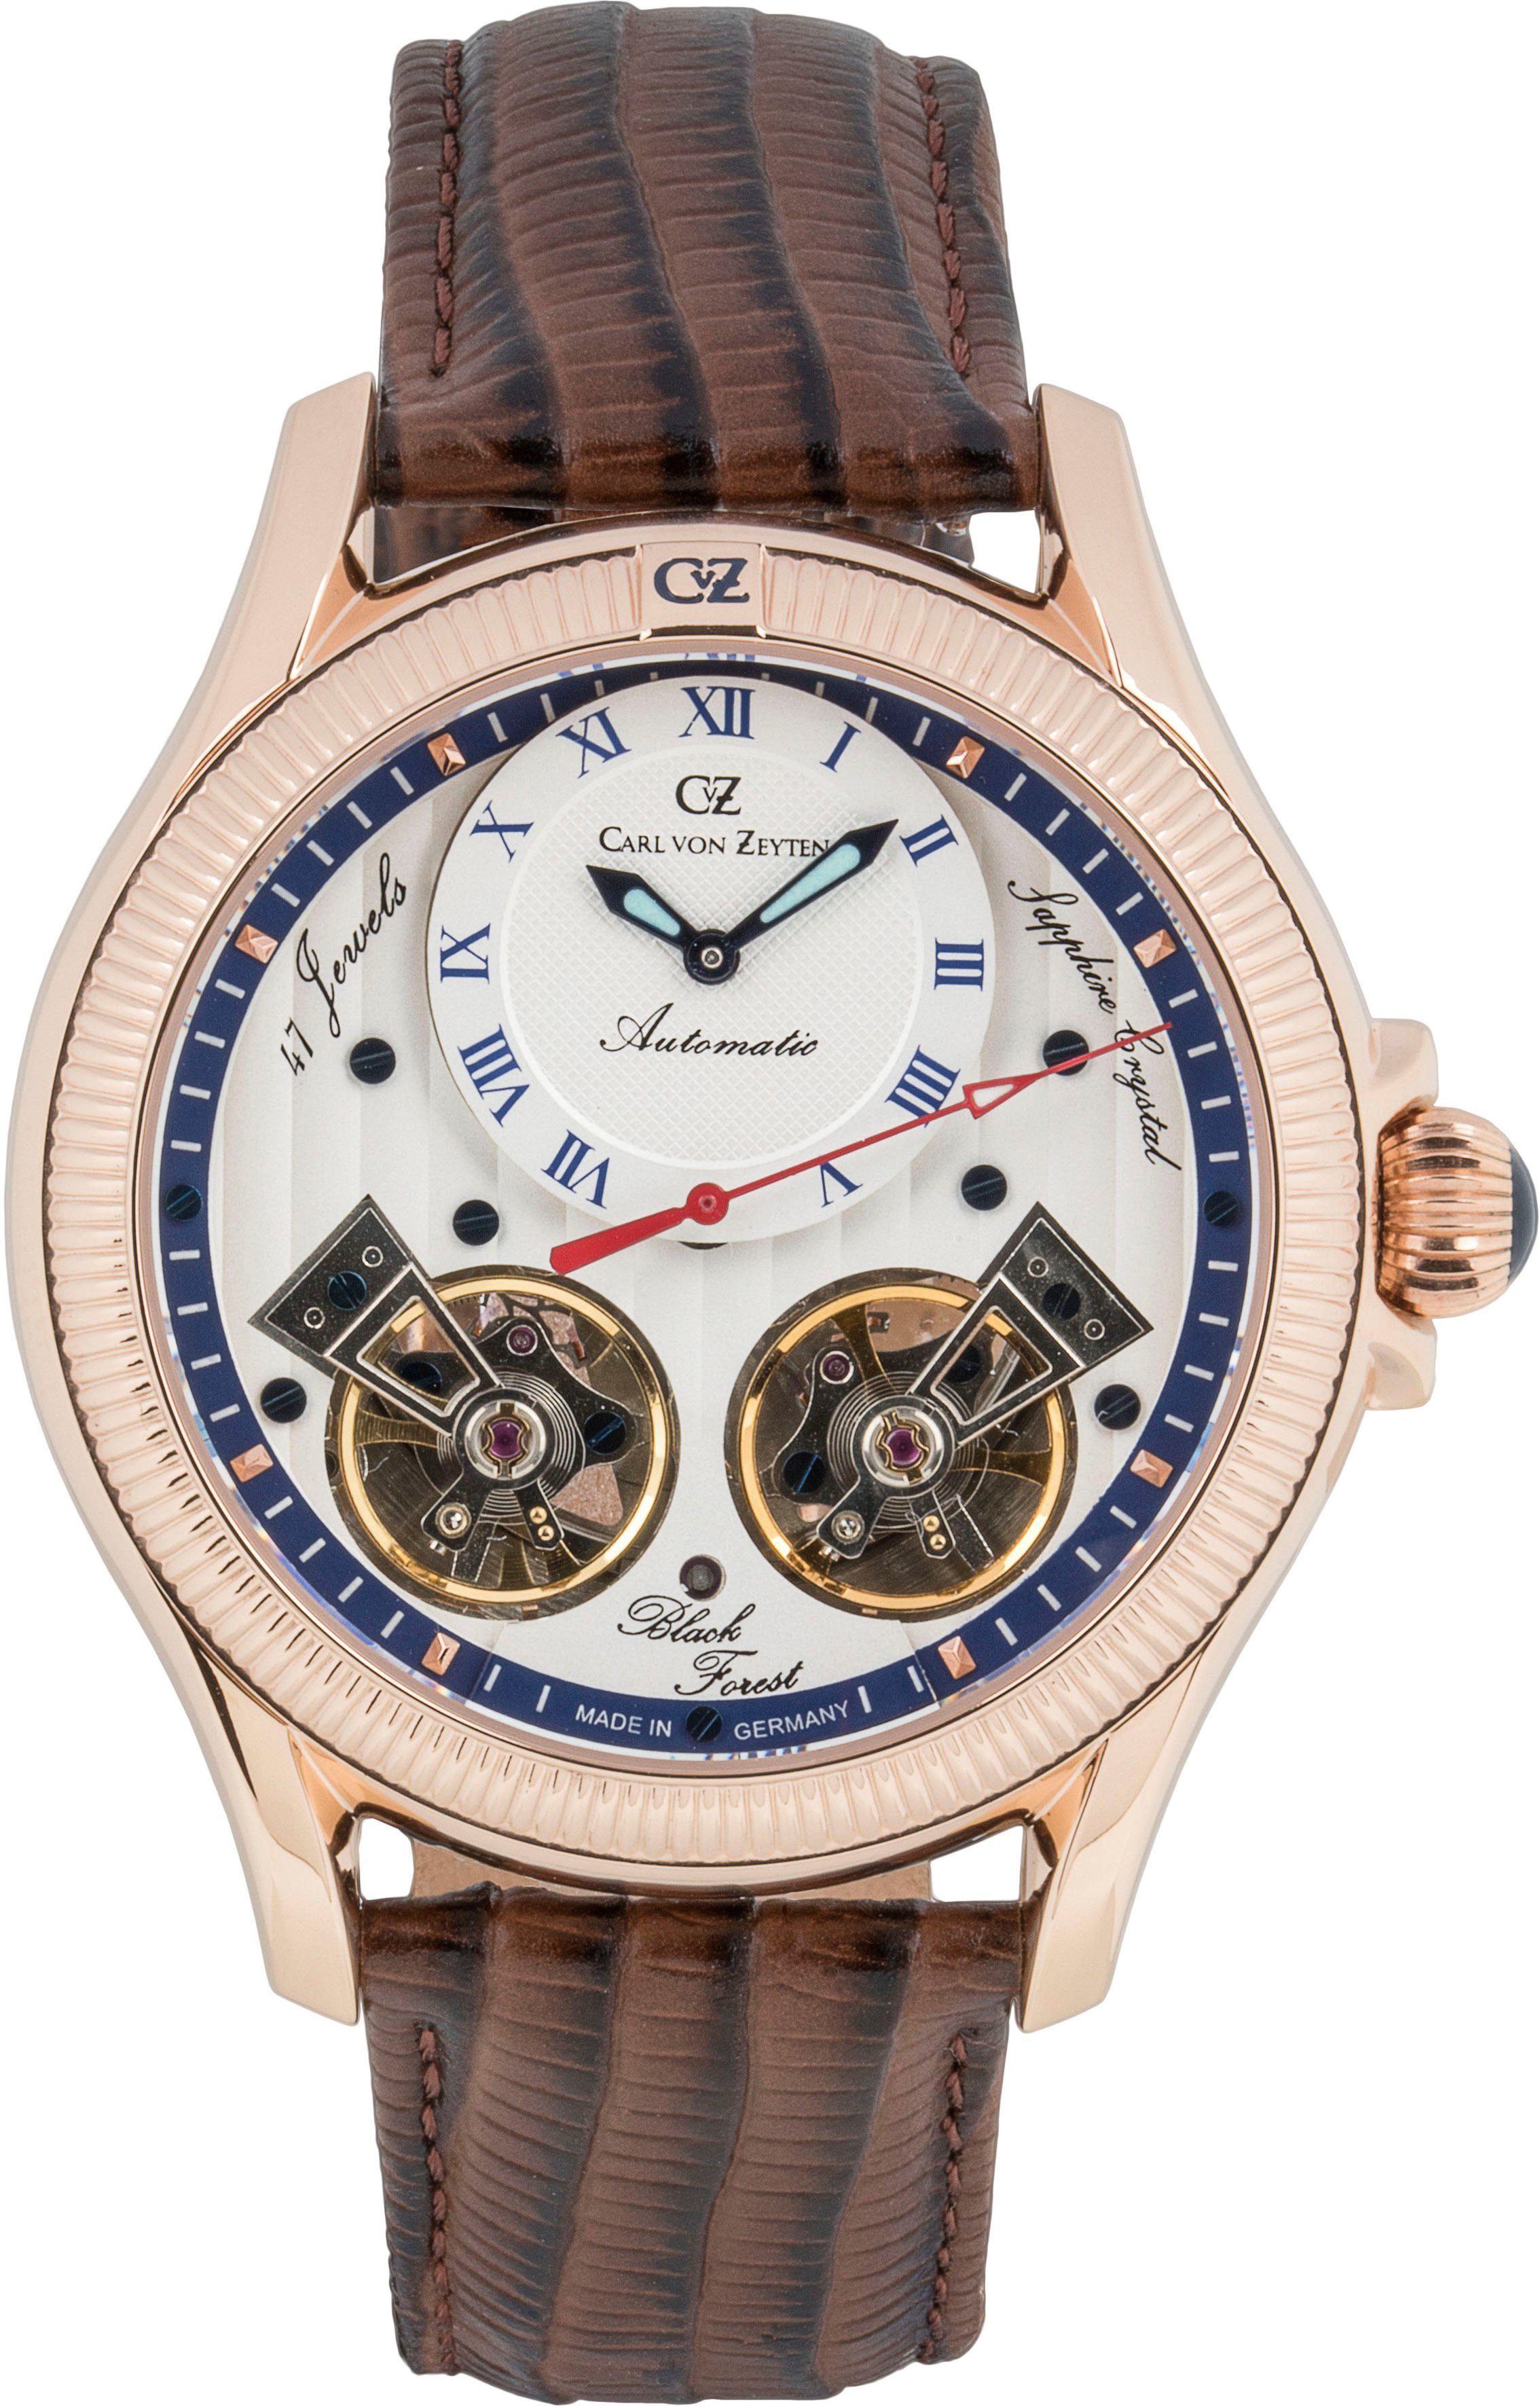 Carl von Zeyten Automatikuhr Waldhaus, CVZ0084RWHS, Armbanduhr, Herrenuhr, Datum, Made in Germany, Mechanische Uhr